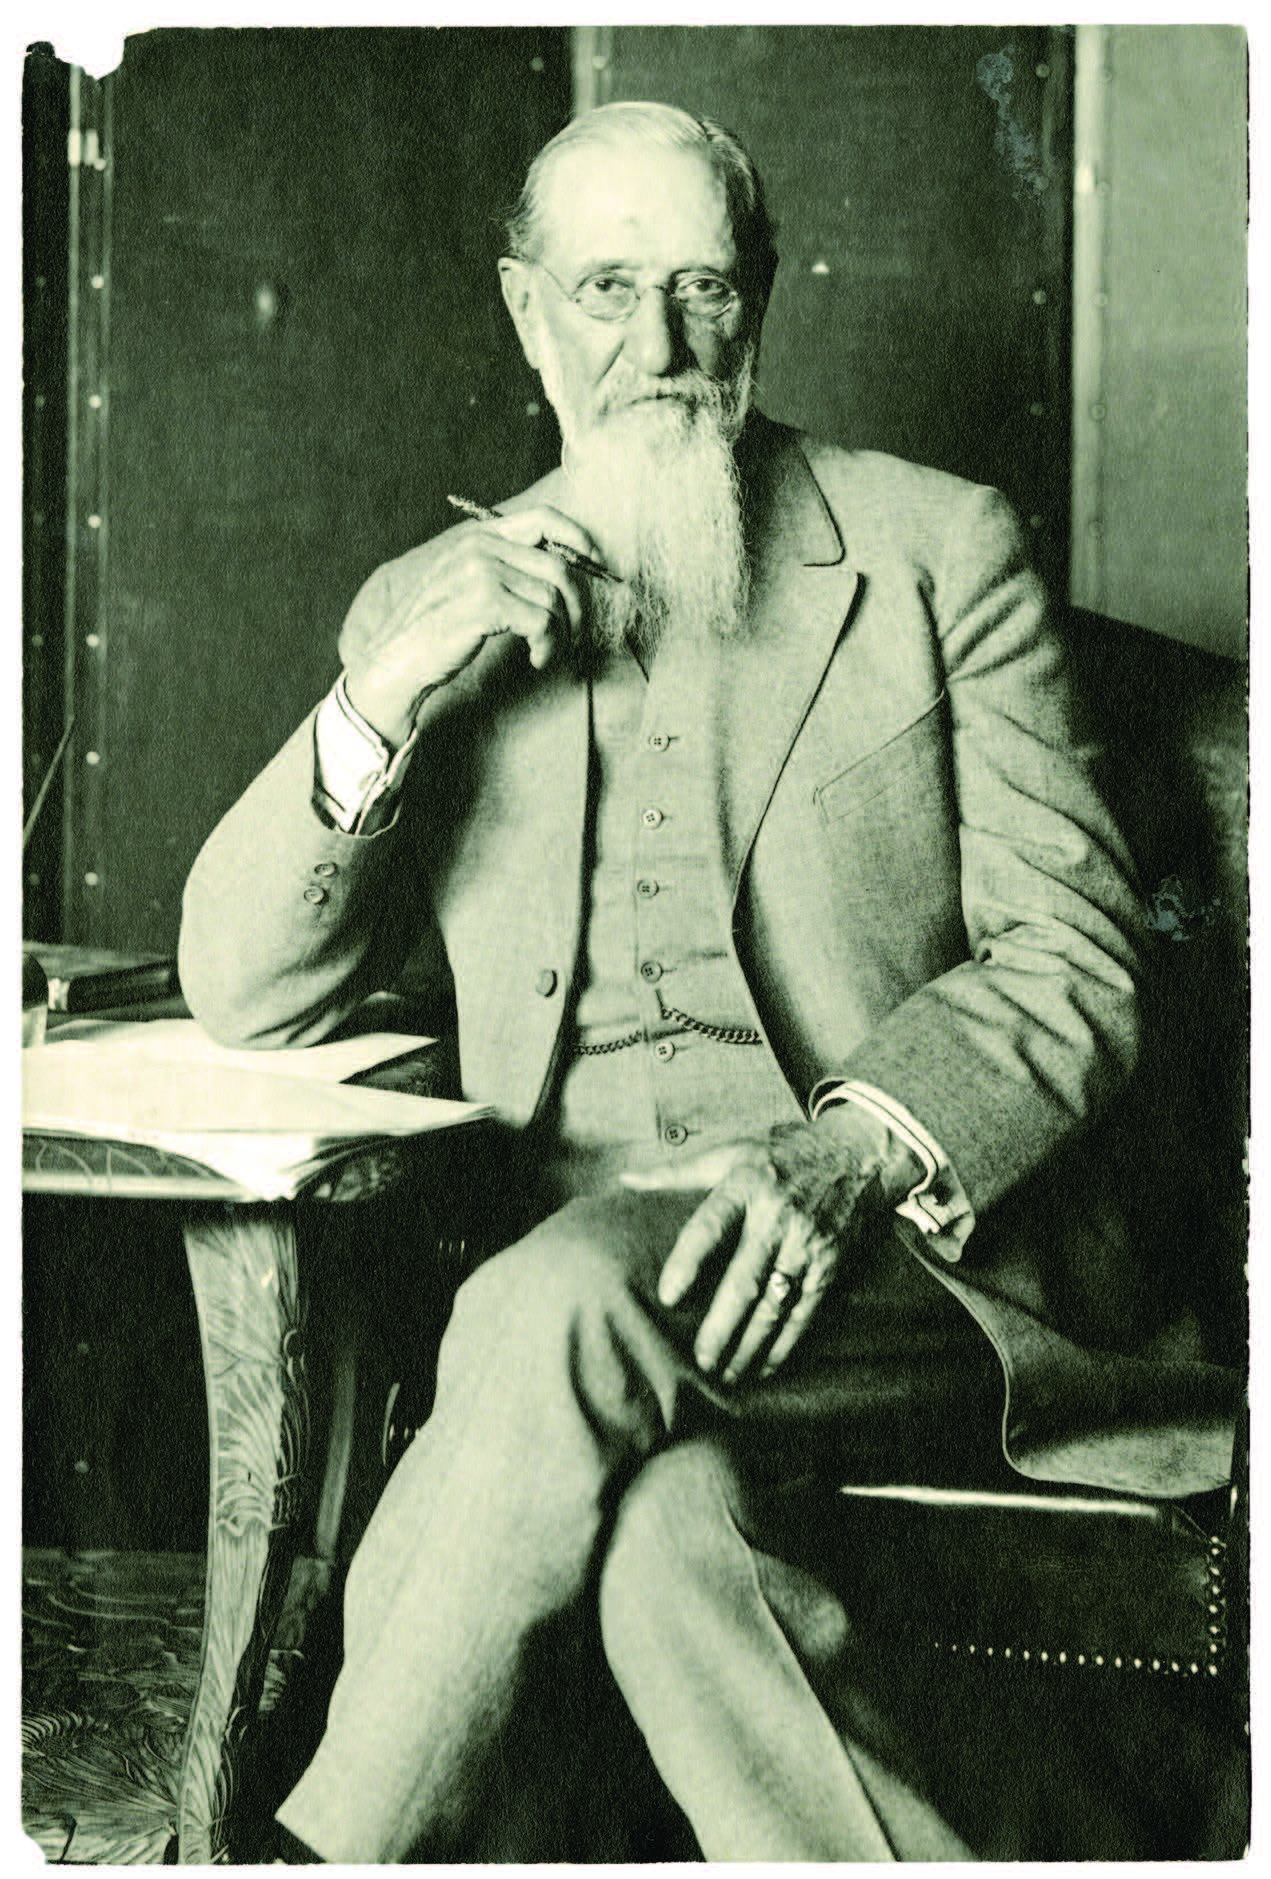 Joseph F. Smith at a desk